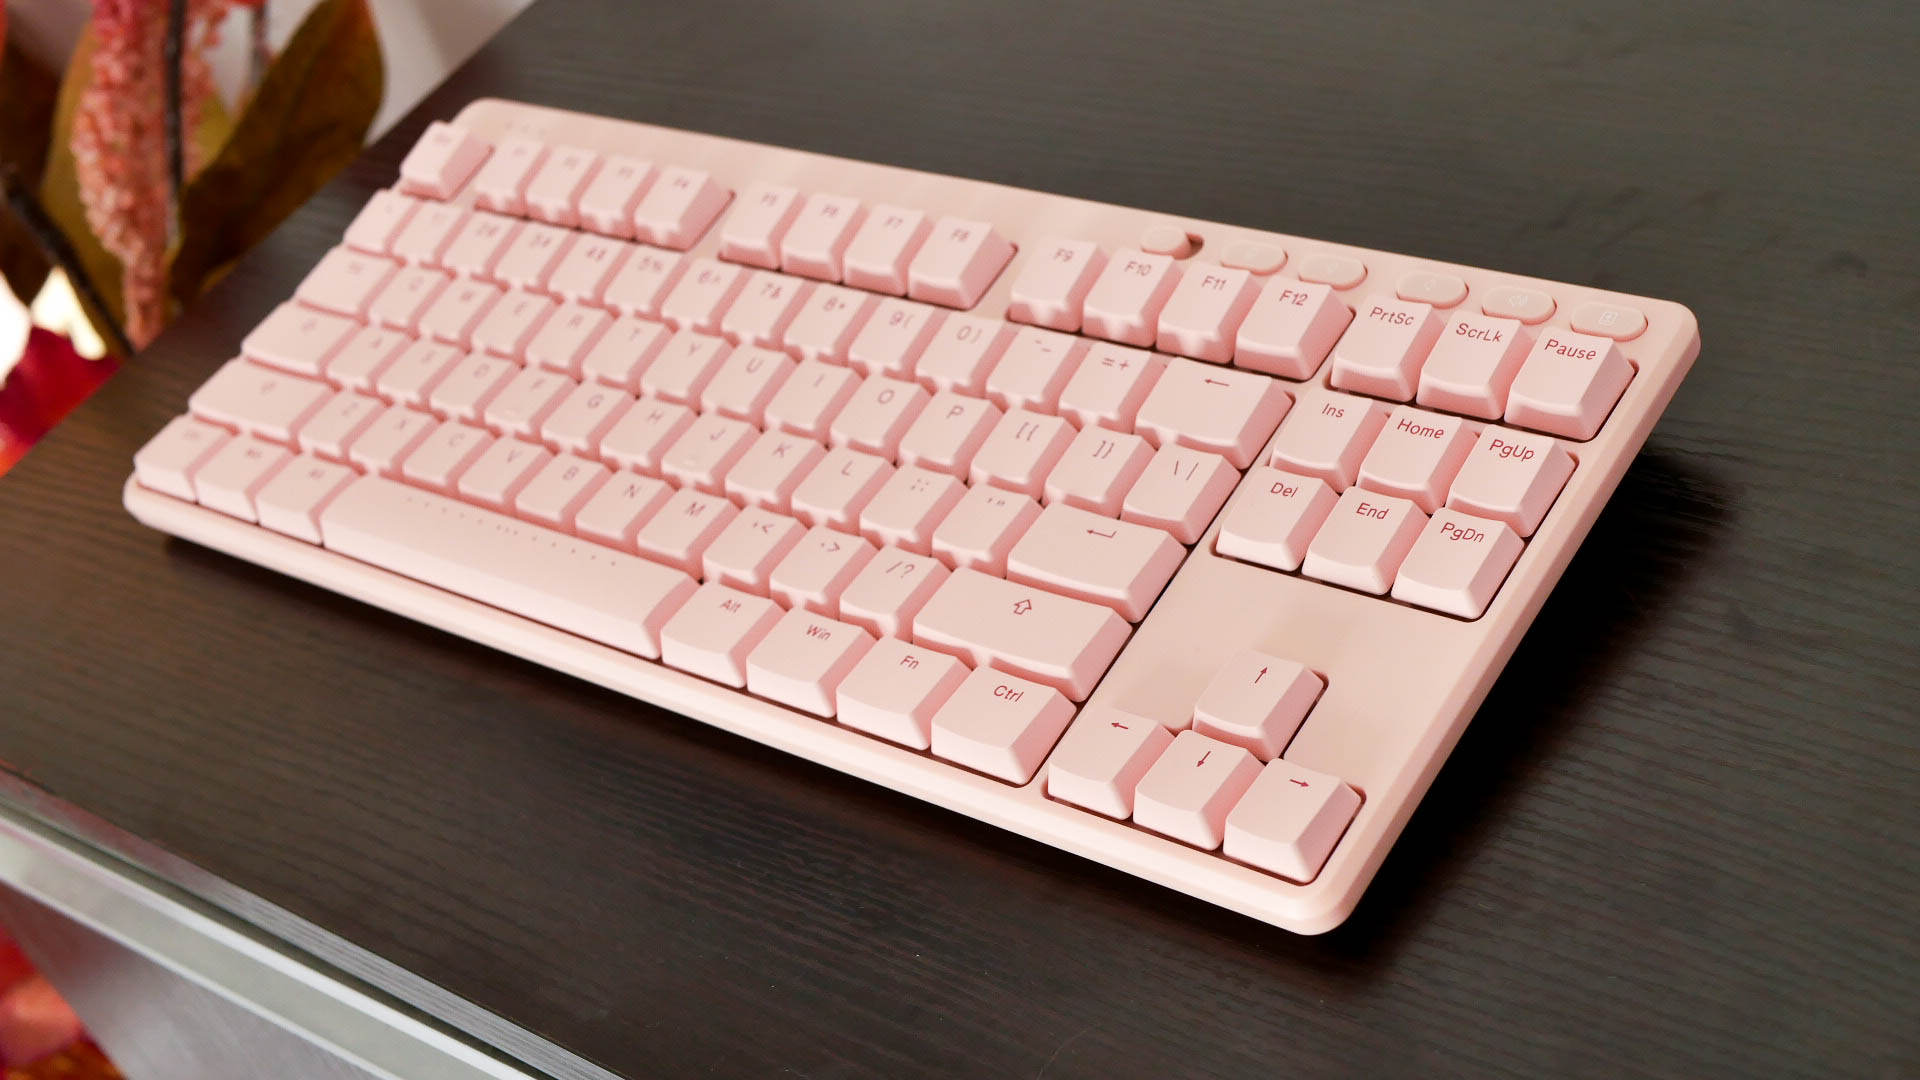 猛男都爱的粉红色ikbcs200双模无线机械键盘开箱体验